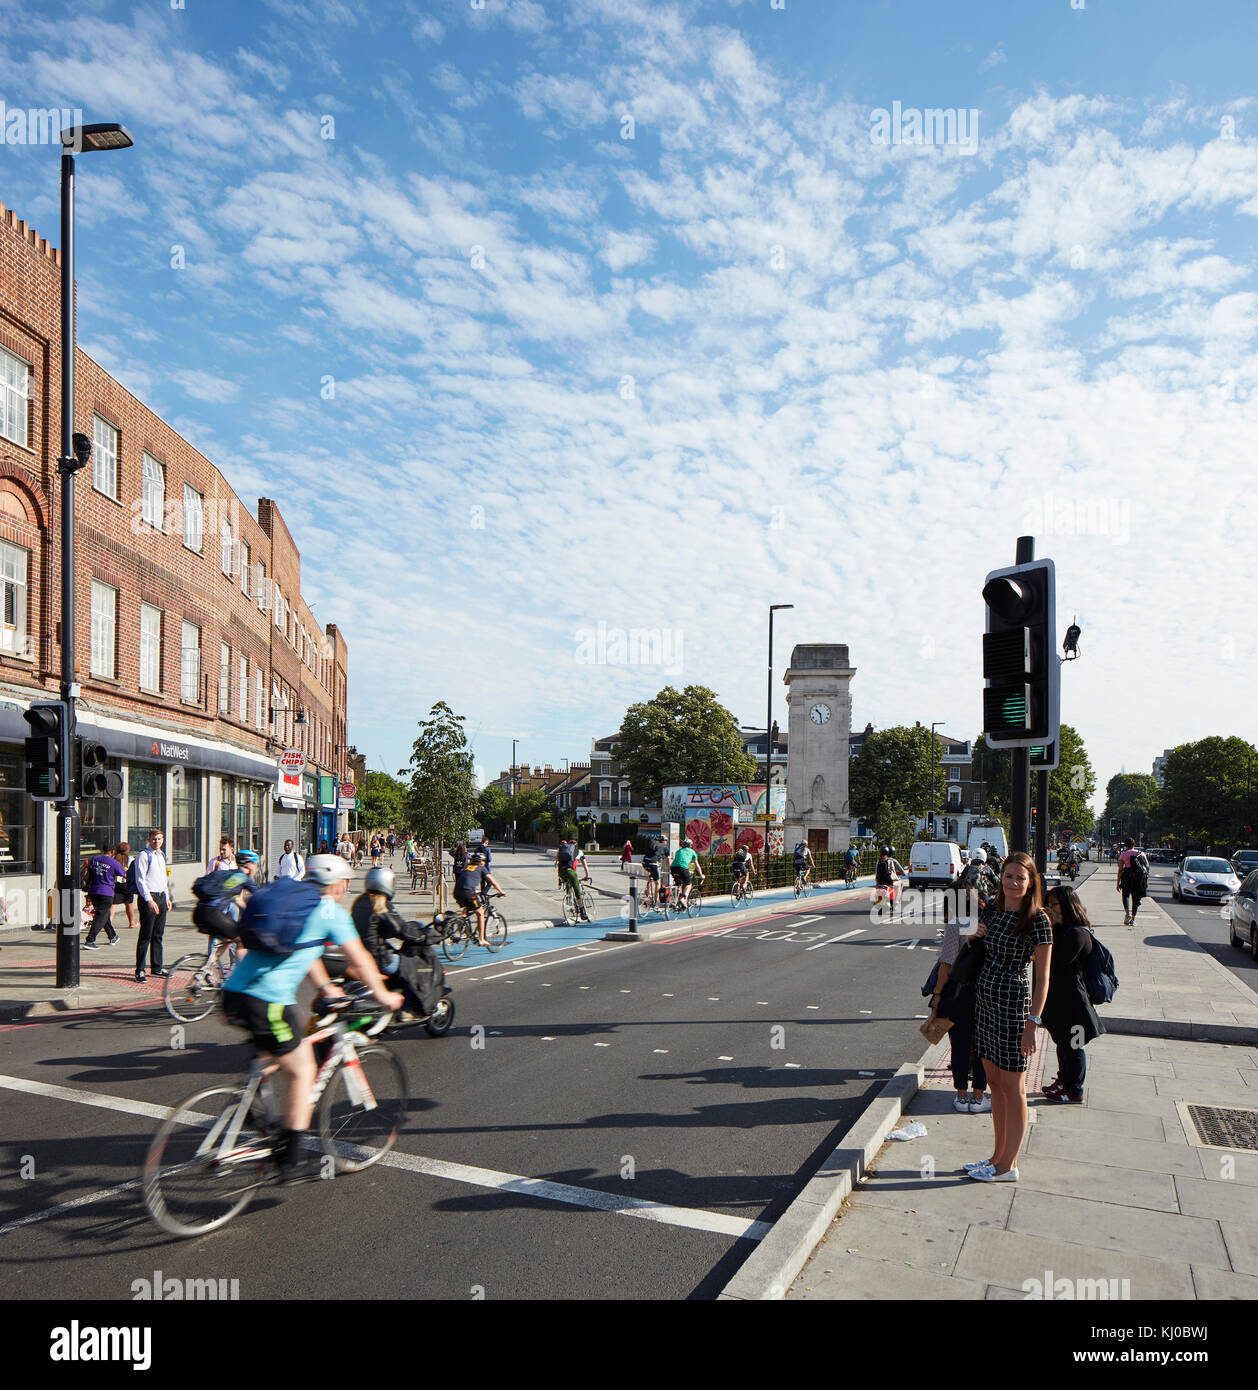 Schnittpunkt mit neuen Rad weg und morgen Verkehr. Stockwell Rahmen Masterplan, London, Vereinigtes Königreich. Architekt: DSDHA, 2017. Stockfoto